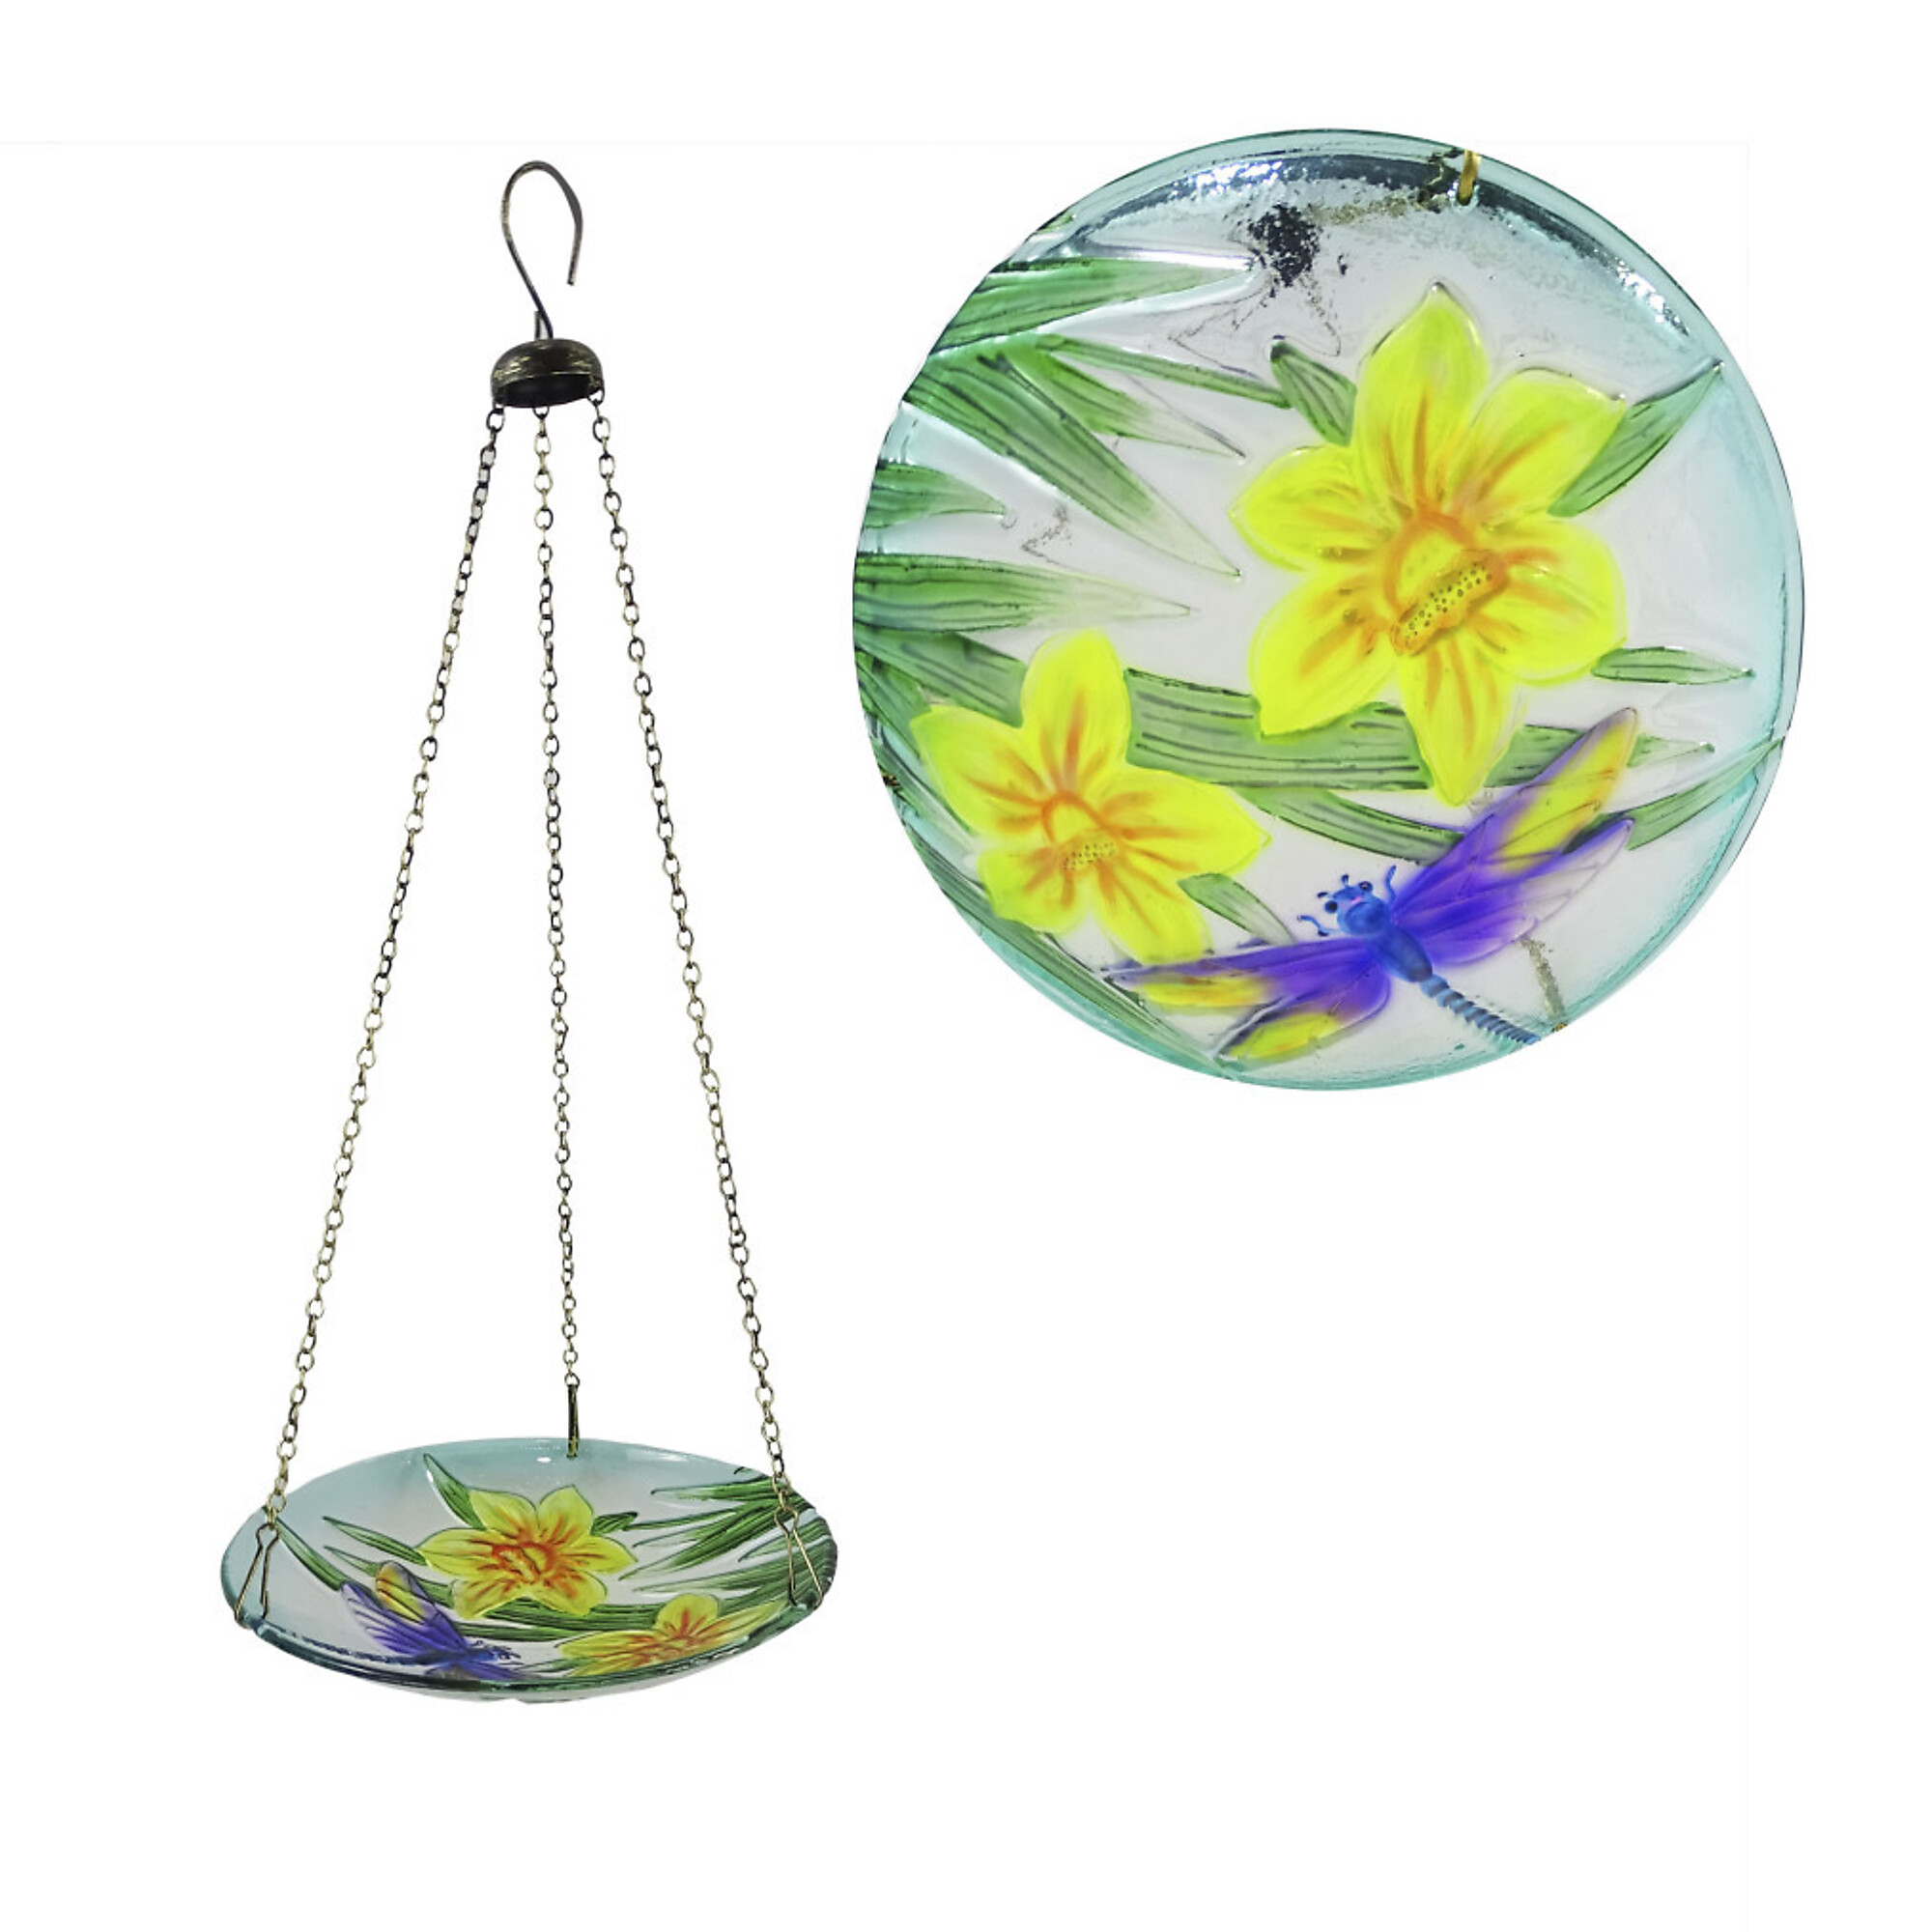 Alpine Corporation, Glass Hanging Birdfeeder w/ Flowers Dragonfly,10Inch, Model KBD158